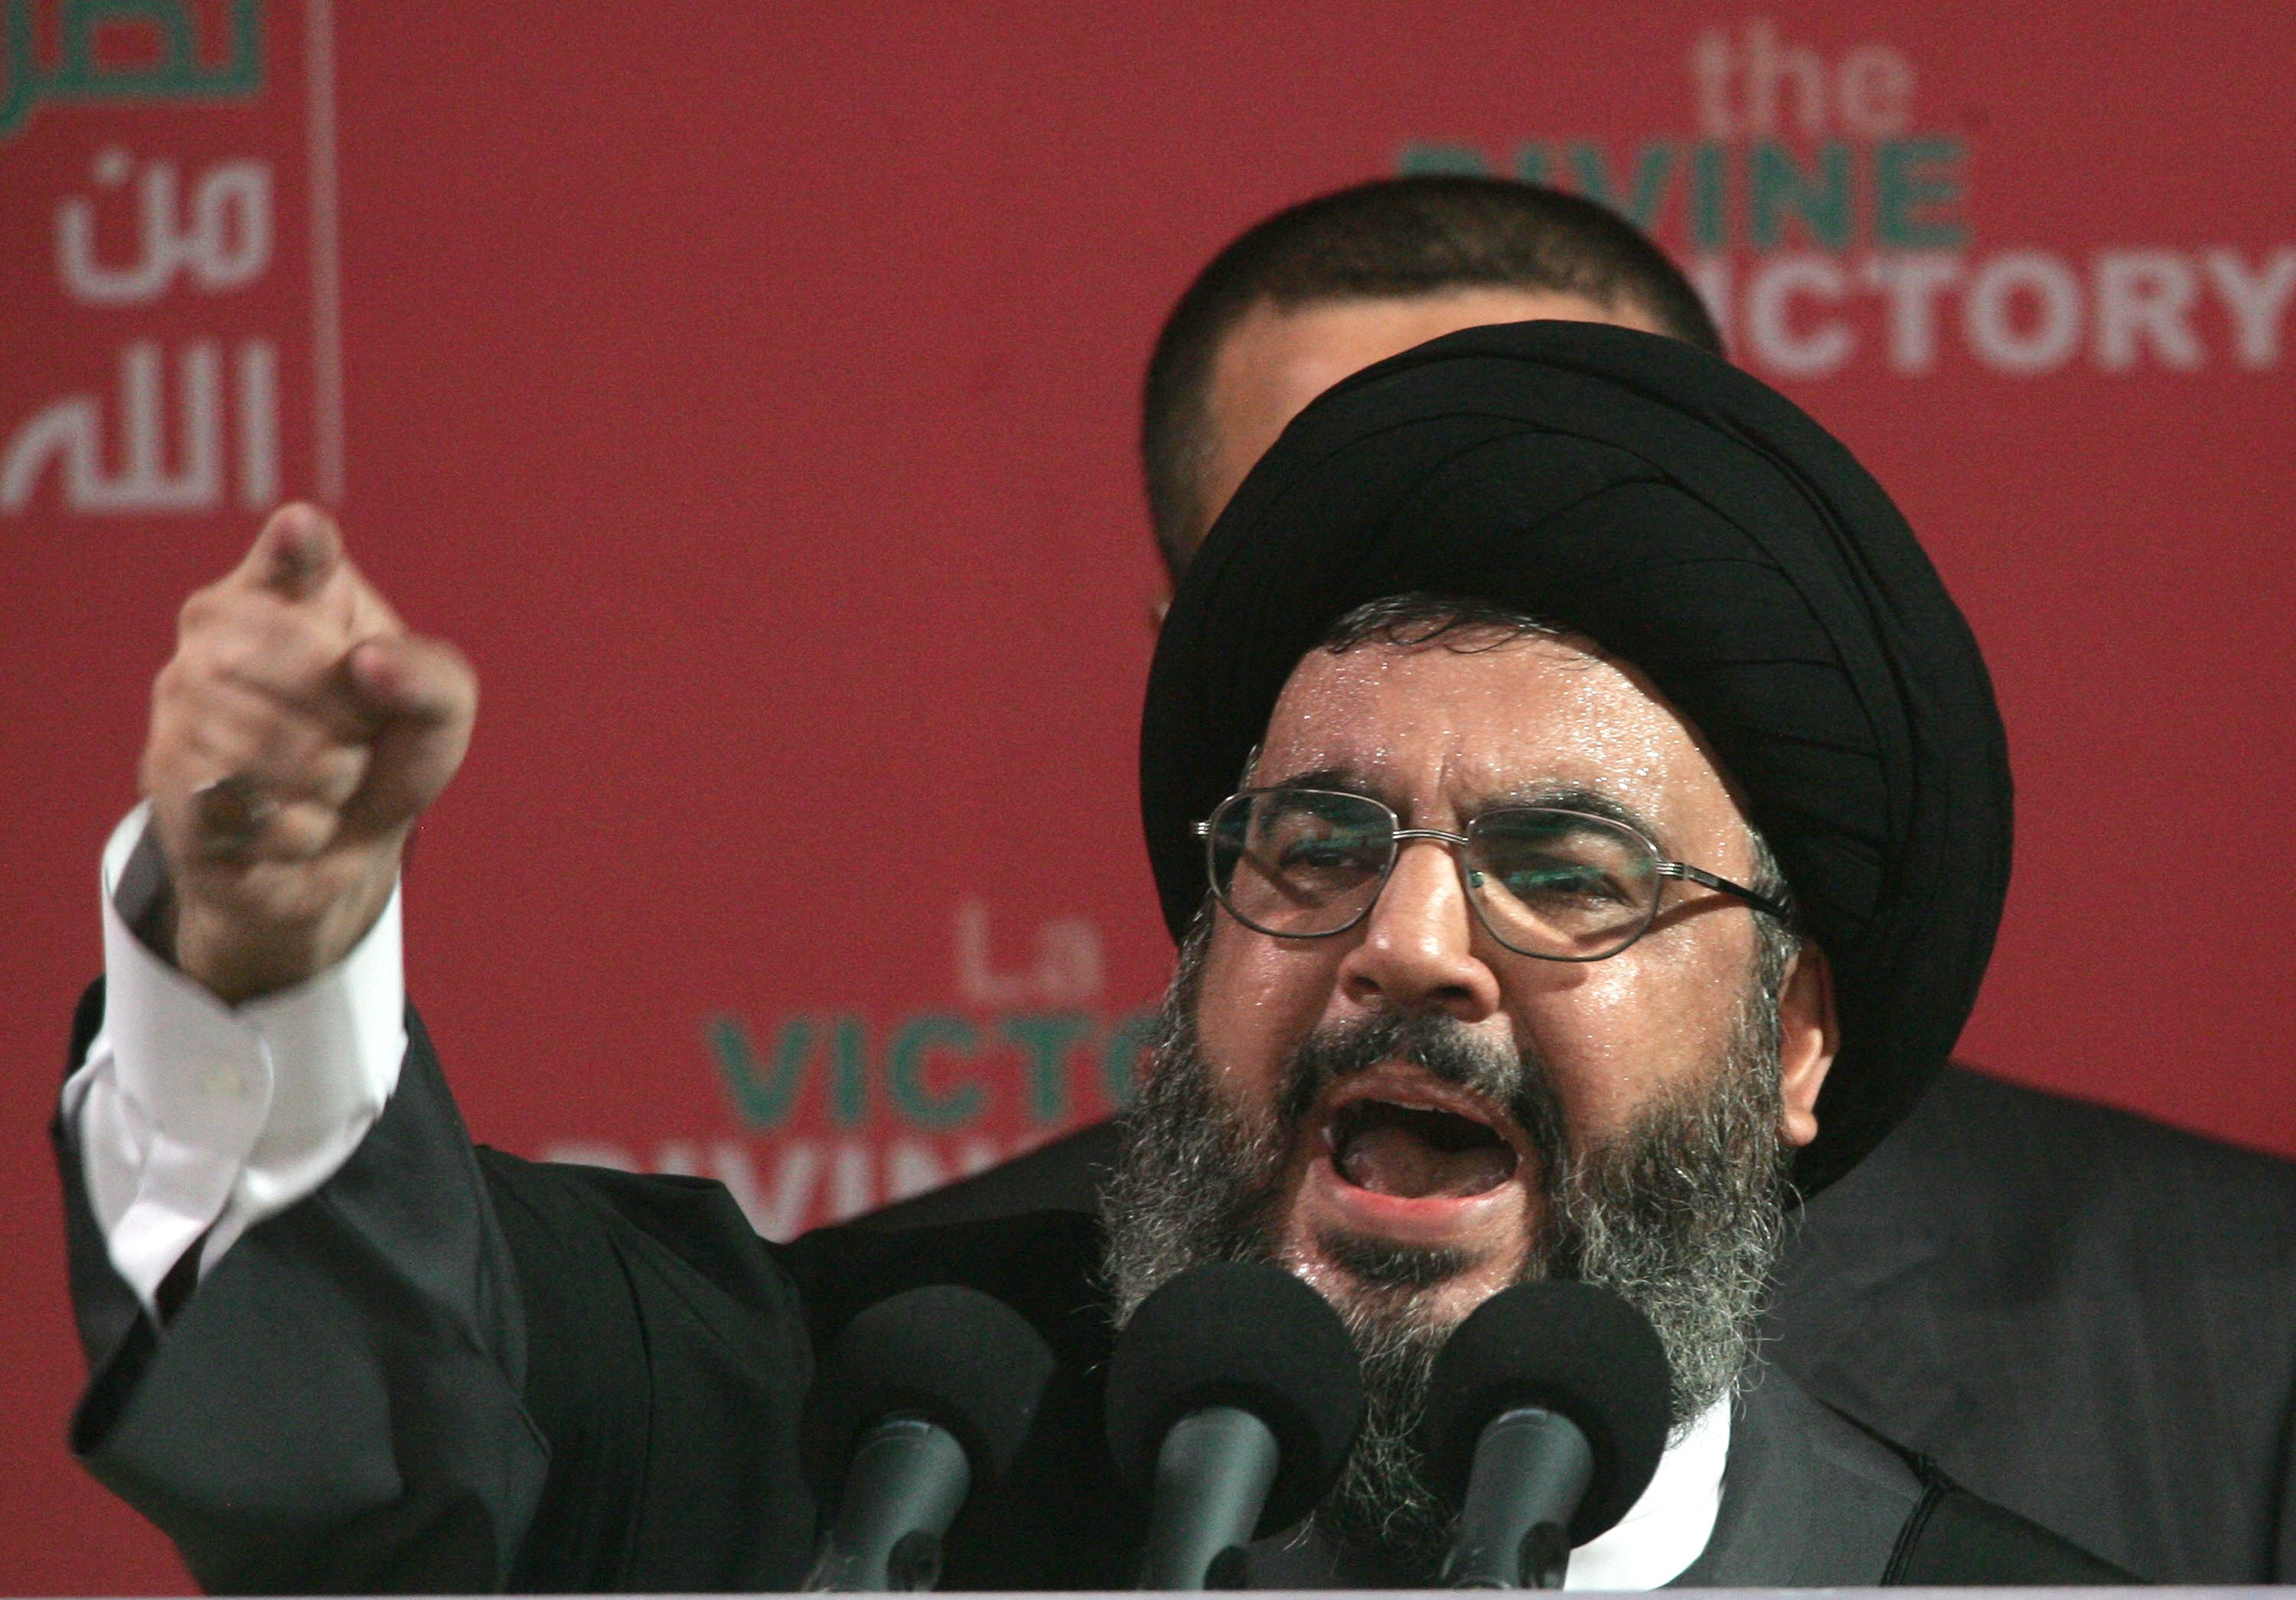 فساد وانعدام ثقة .. أكذوبة "حزب الله" في طريقها للانهيار